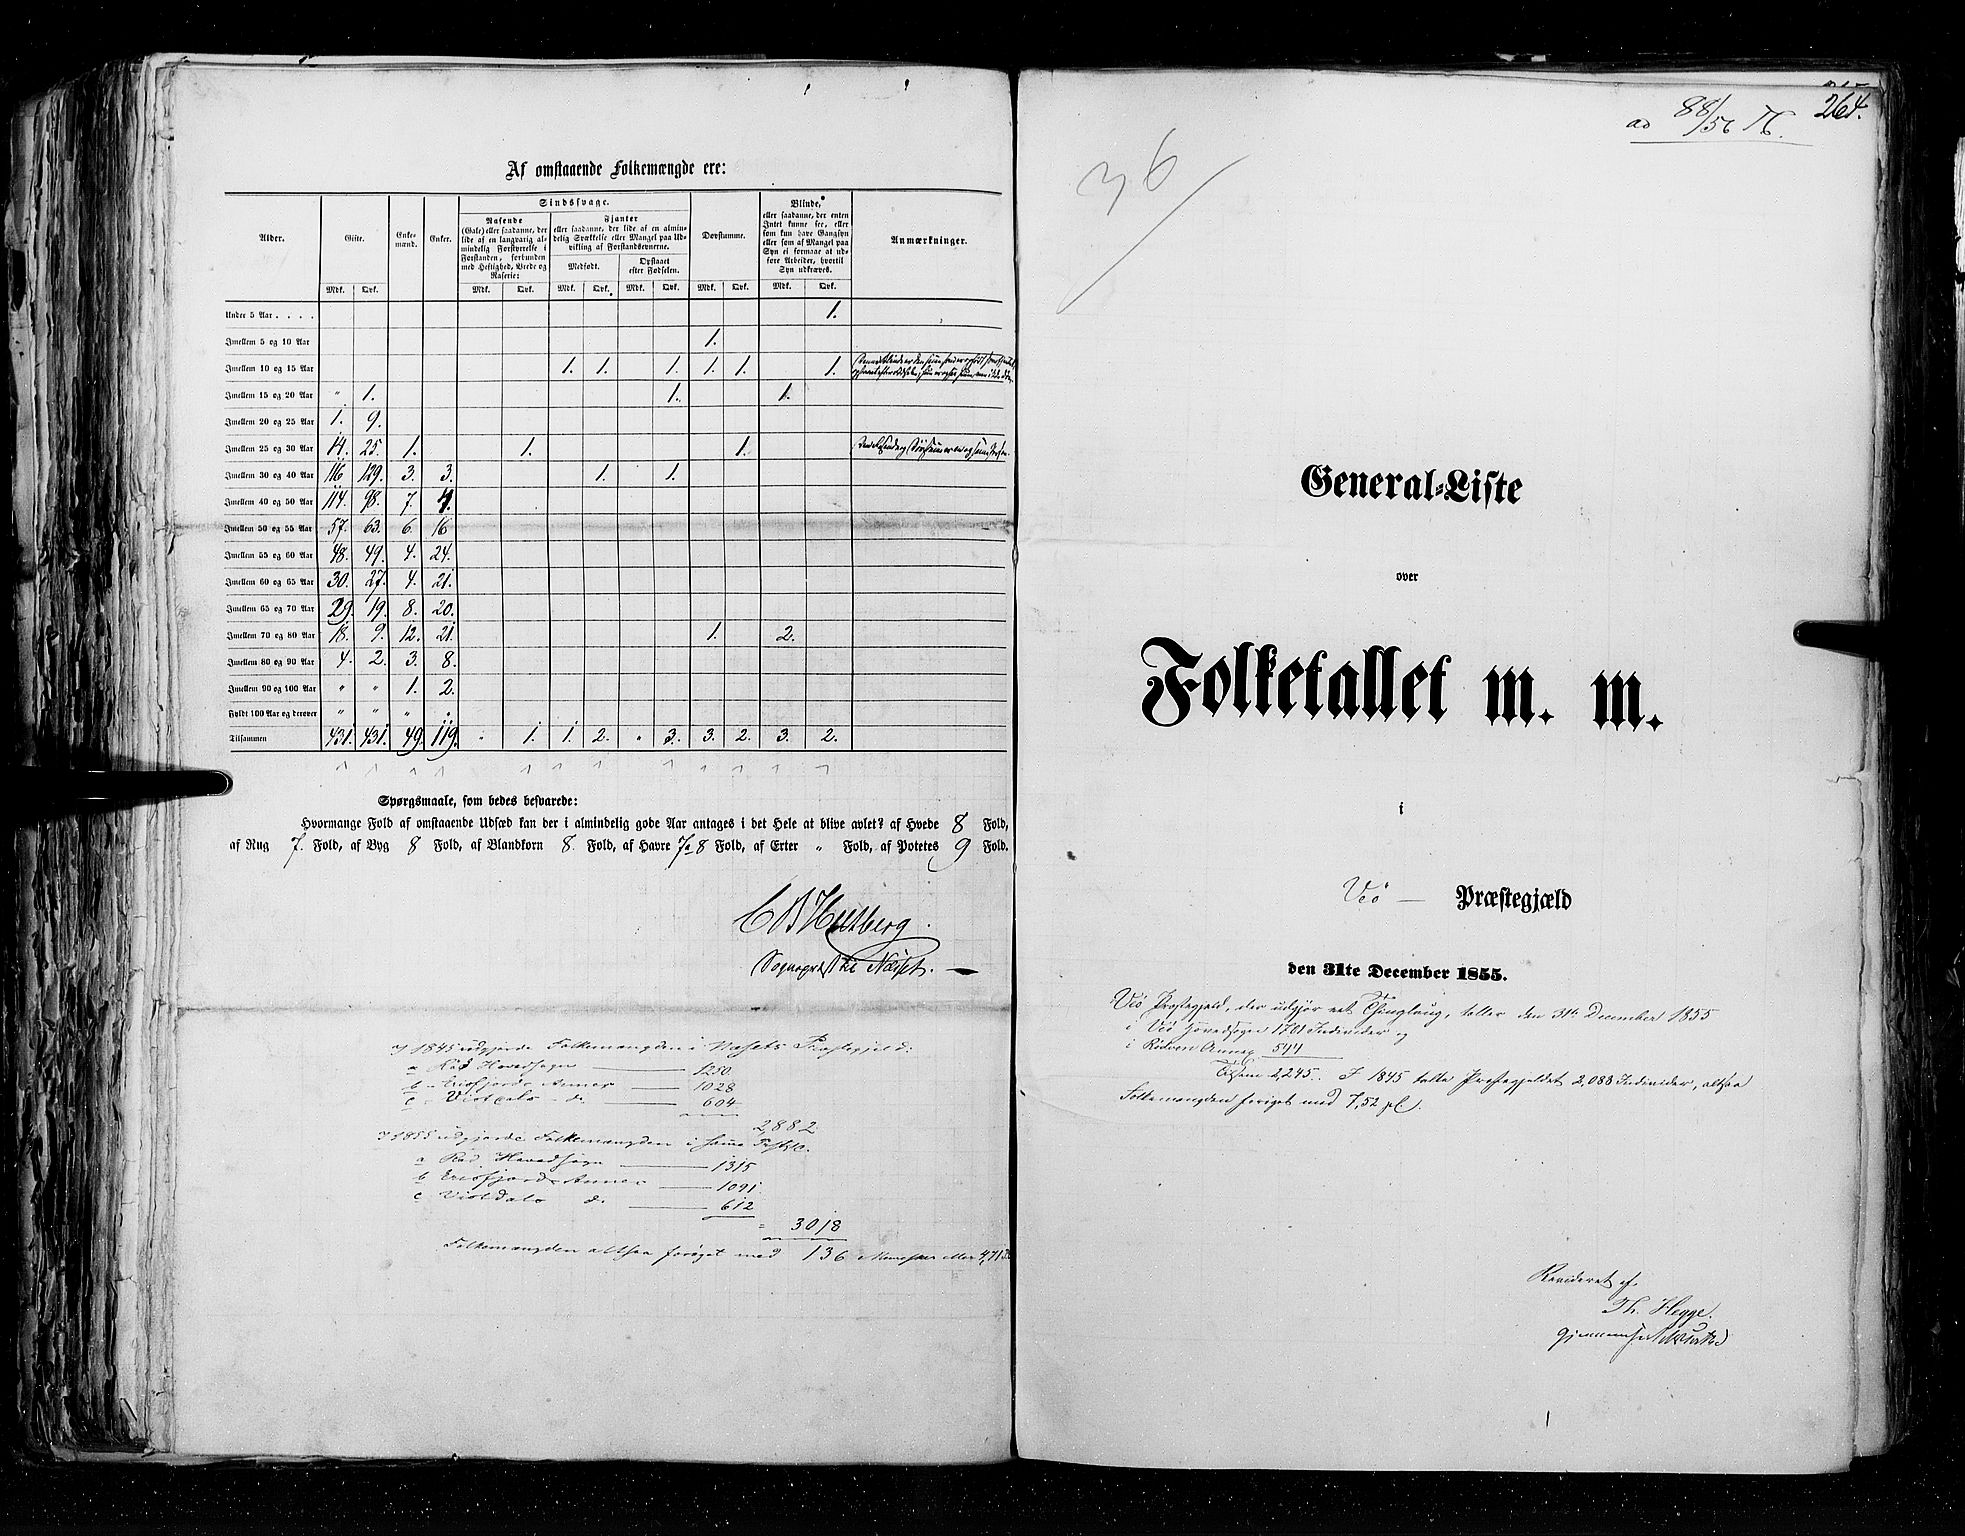 RA, Census 1855, vol. 5: Nordre Bergenhus amt, Romsdal amt og Søndre Trondhjem amt, 1855, p. 264